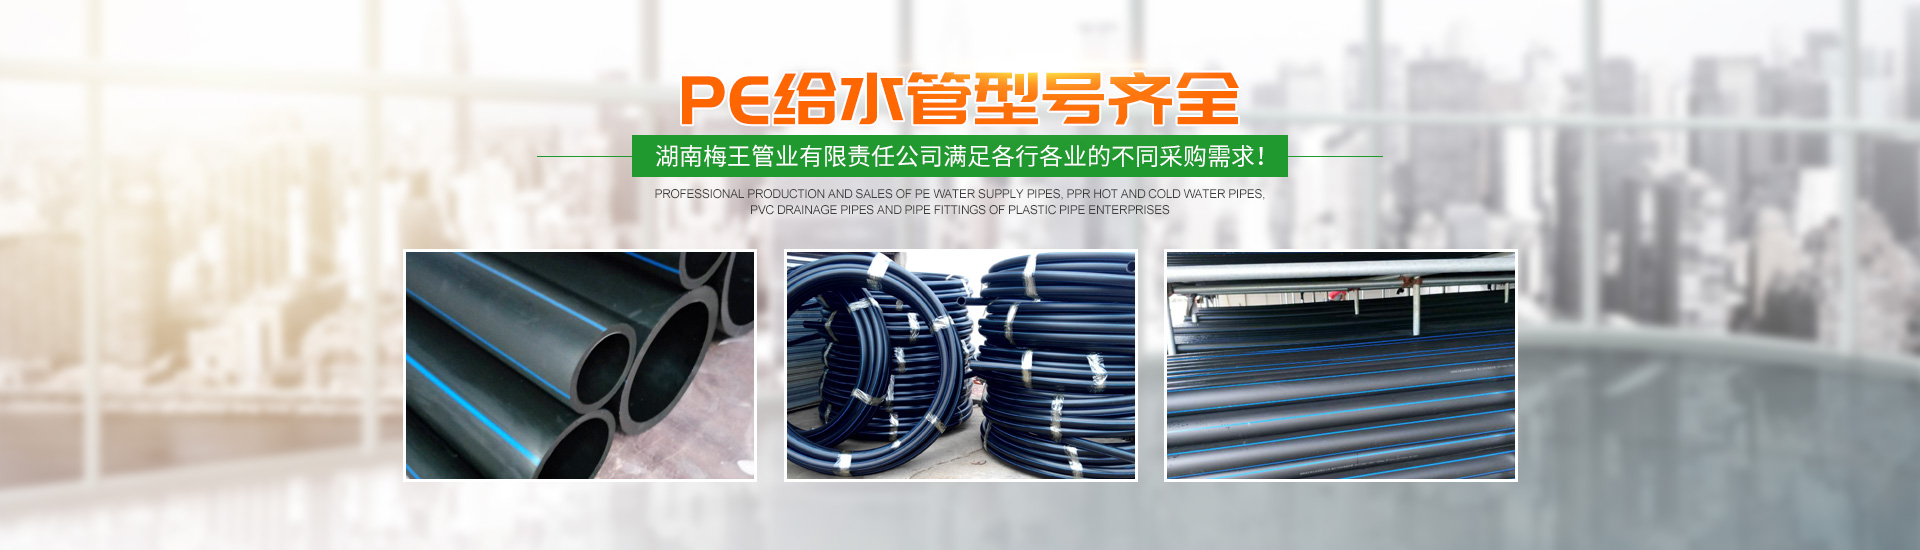 湖南梅王管业有限责任公司_湖南PE给水管销售|PPR冷热水管销售|PVC排水管管材哪里好